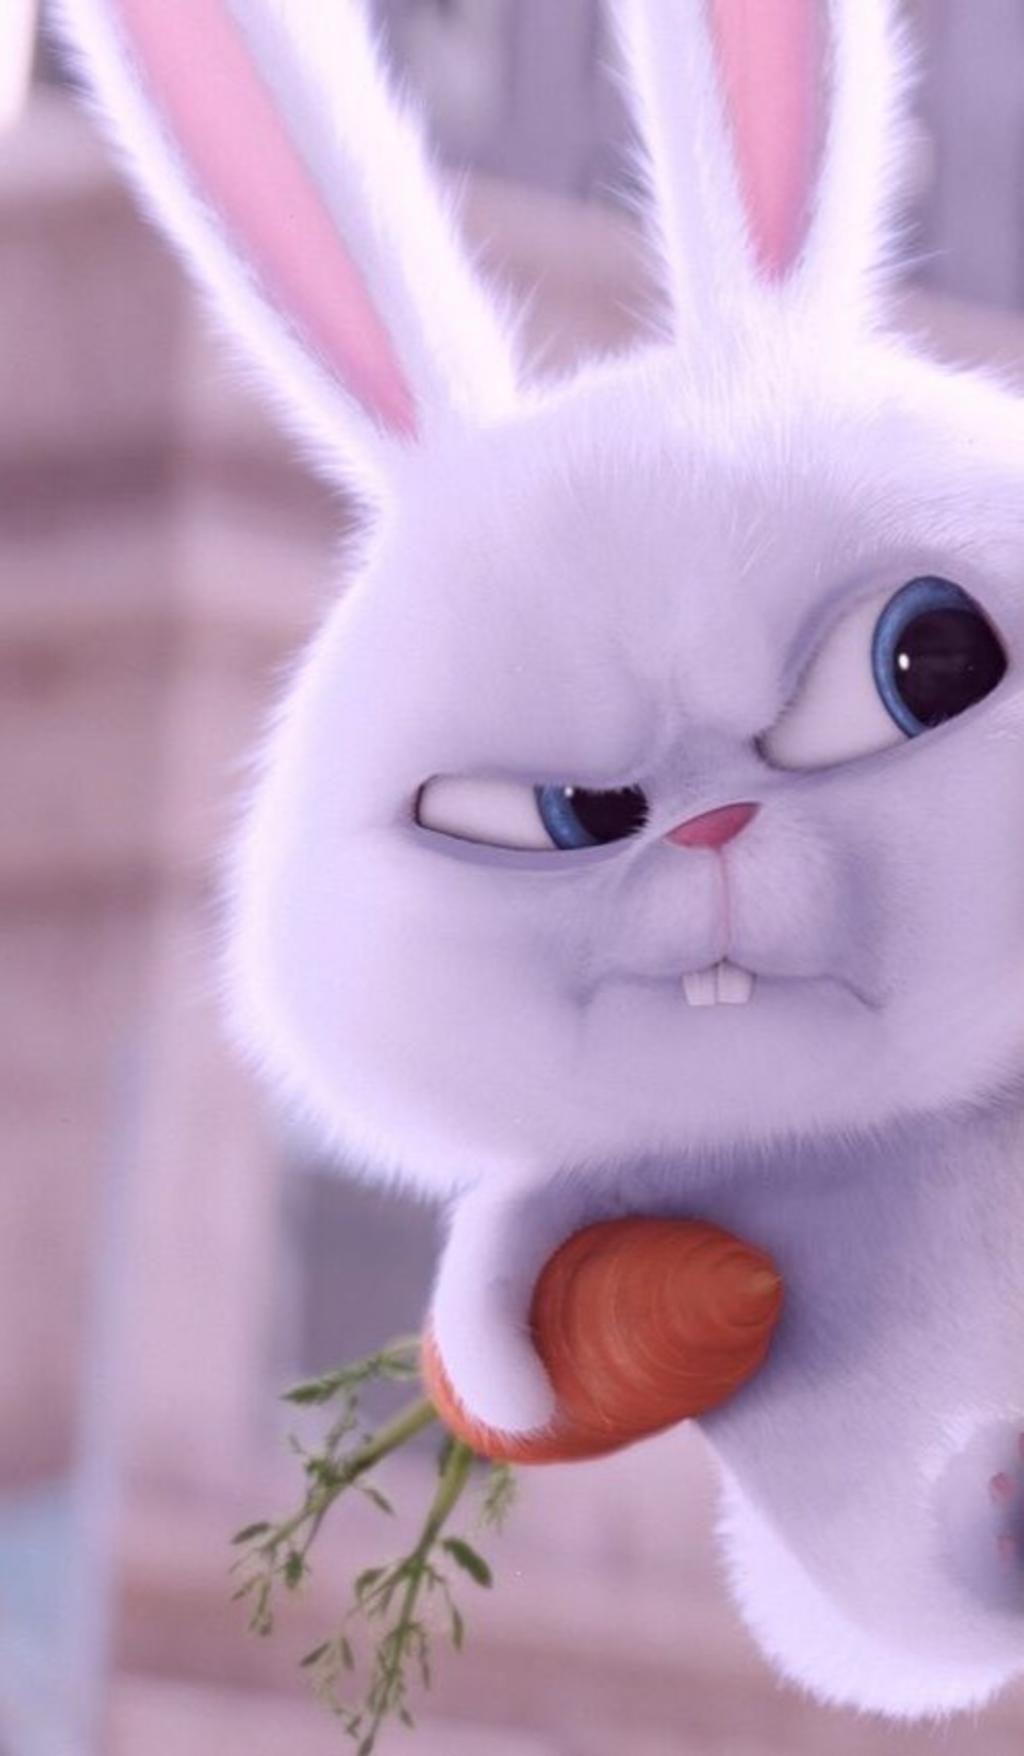 Thỏ Snowball Avatar sẽ đưa bạn vào thế giới của bộ phim Hoảng loạn. Bạn sẽ được trải nghiệm cuộc phiêu lưu đầy hấp dẫn cùng với Snowball và các nhân vật khác trong bộ phim. Hãy sẵn sàng cho một chuyến hành trình đầy thú vị.